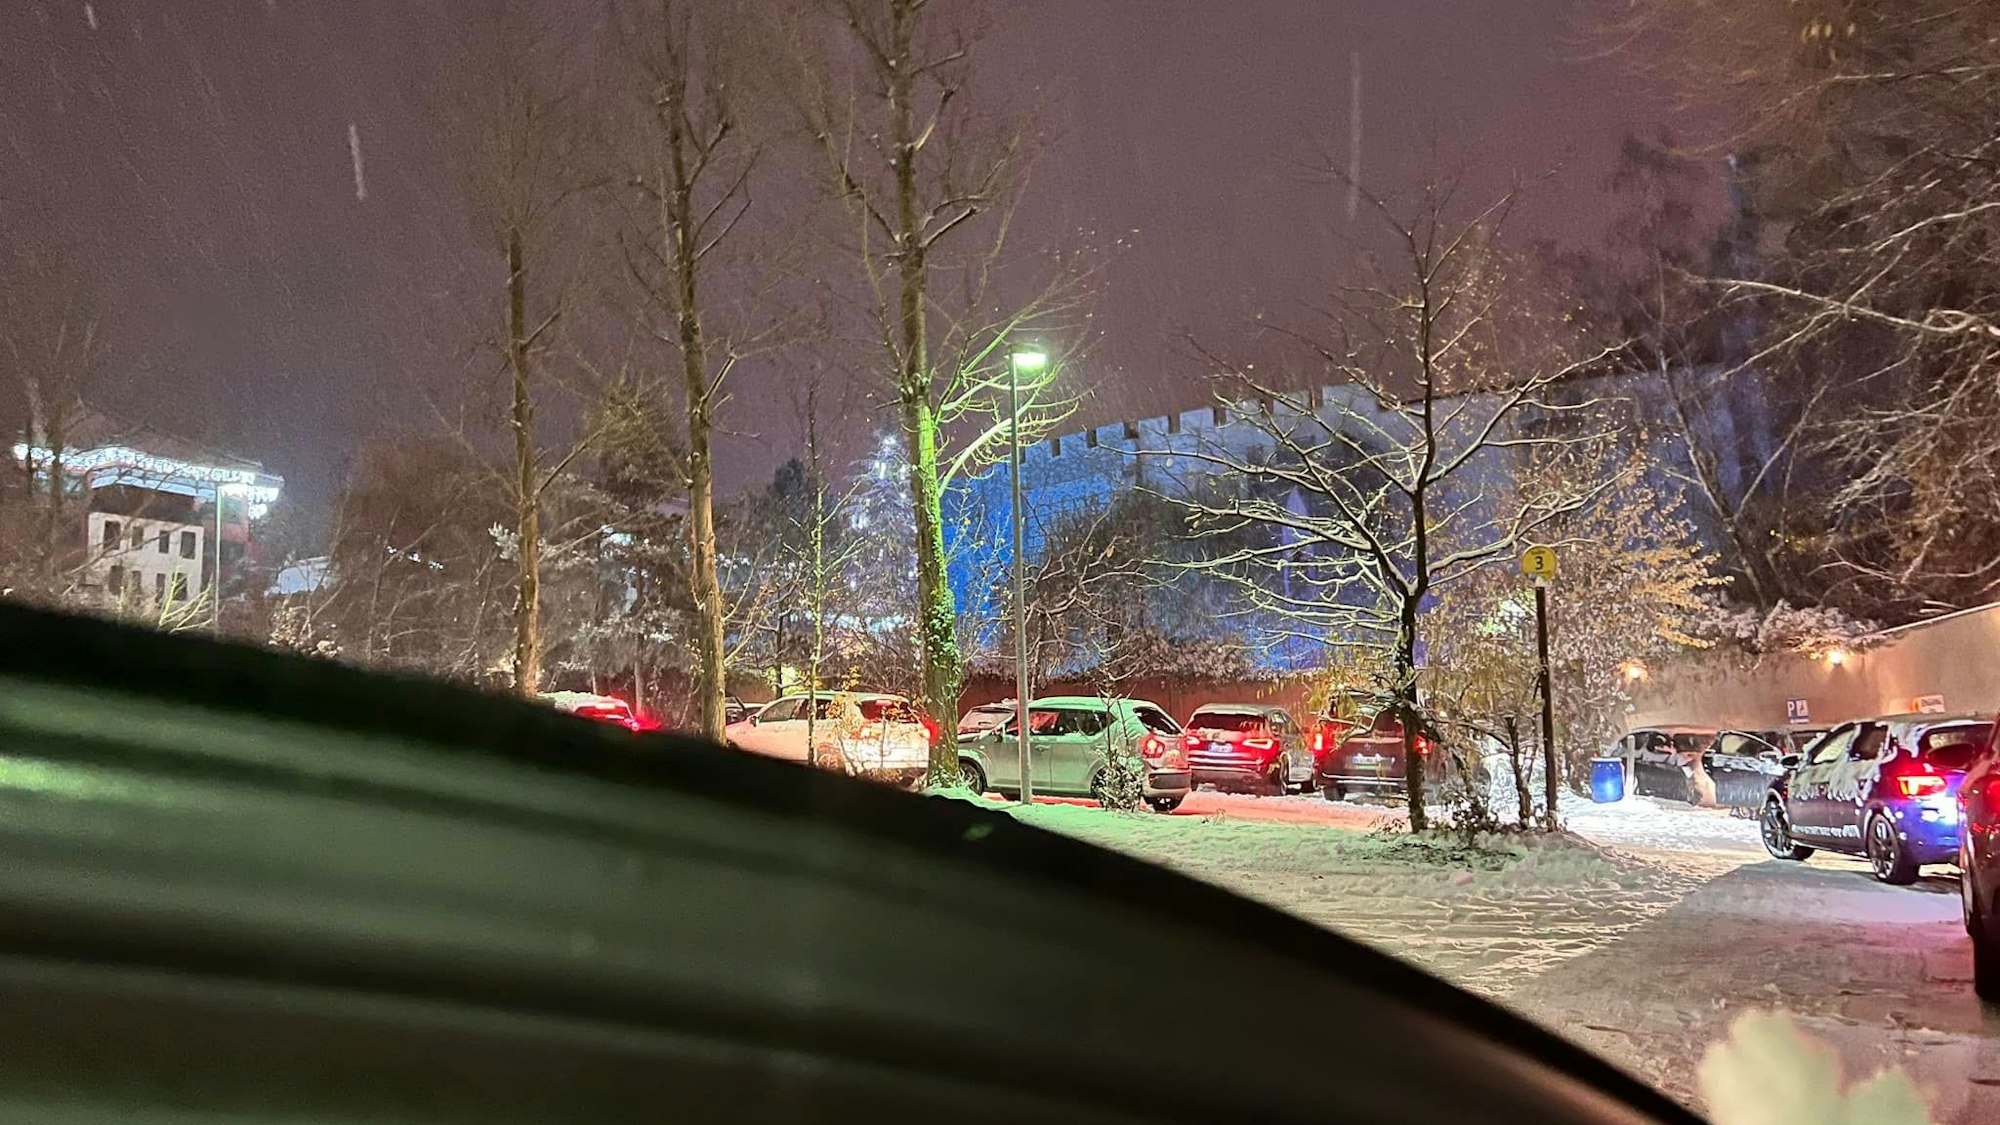 Auf dem Foto ist der tief verschneite Parkplatz des Freizeitparks Phantasialands zu sehen. Autos stehen in der Schlange mit laufenden Motoren.